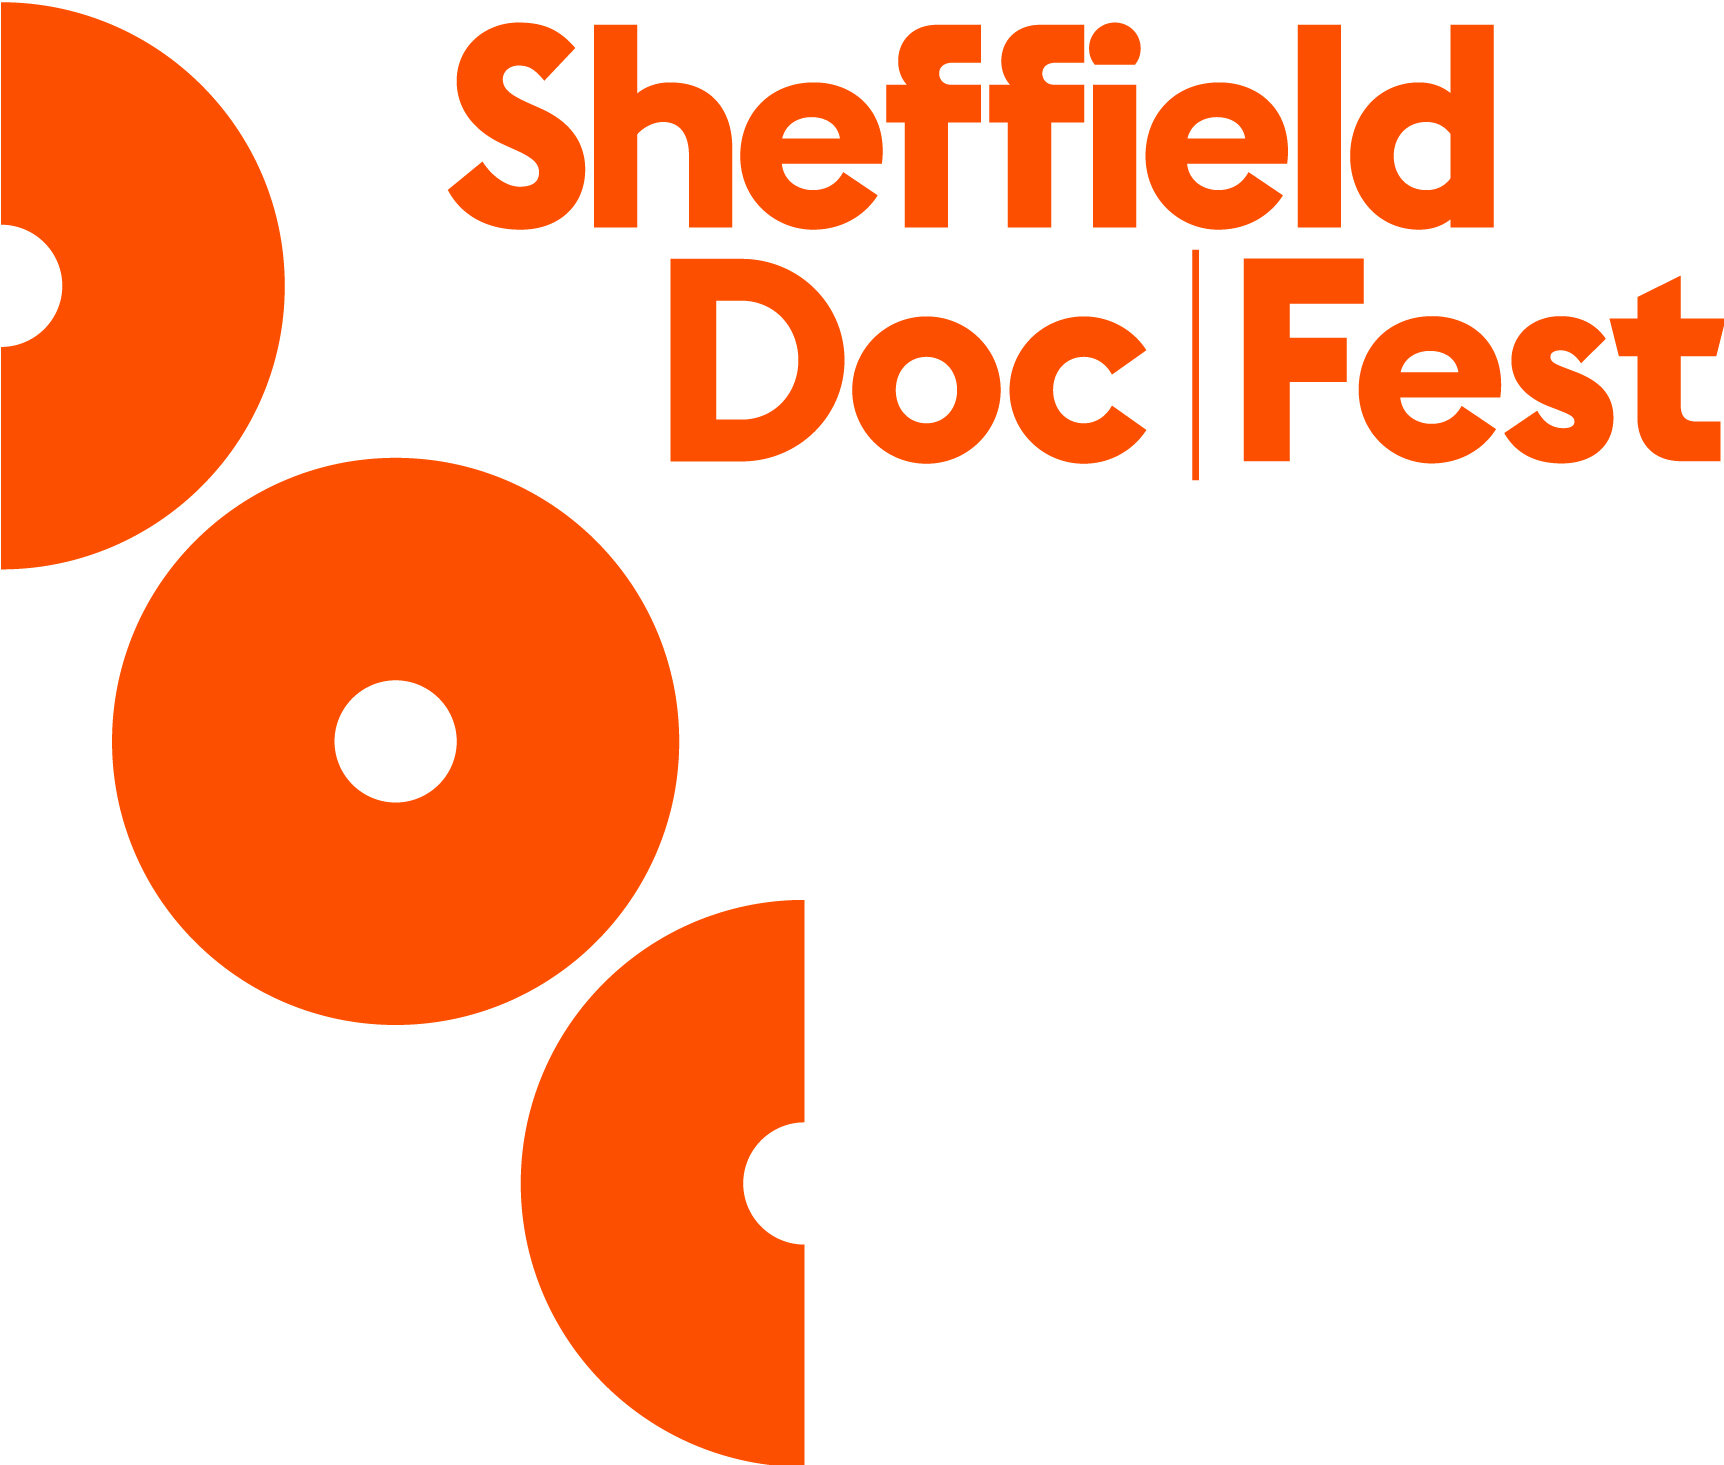 Sheffield_DocFest_Logo.jpg